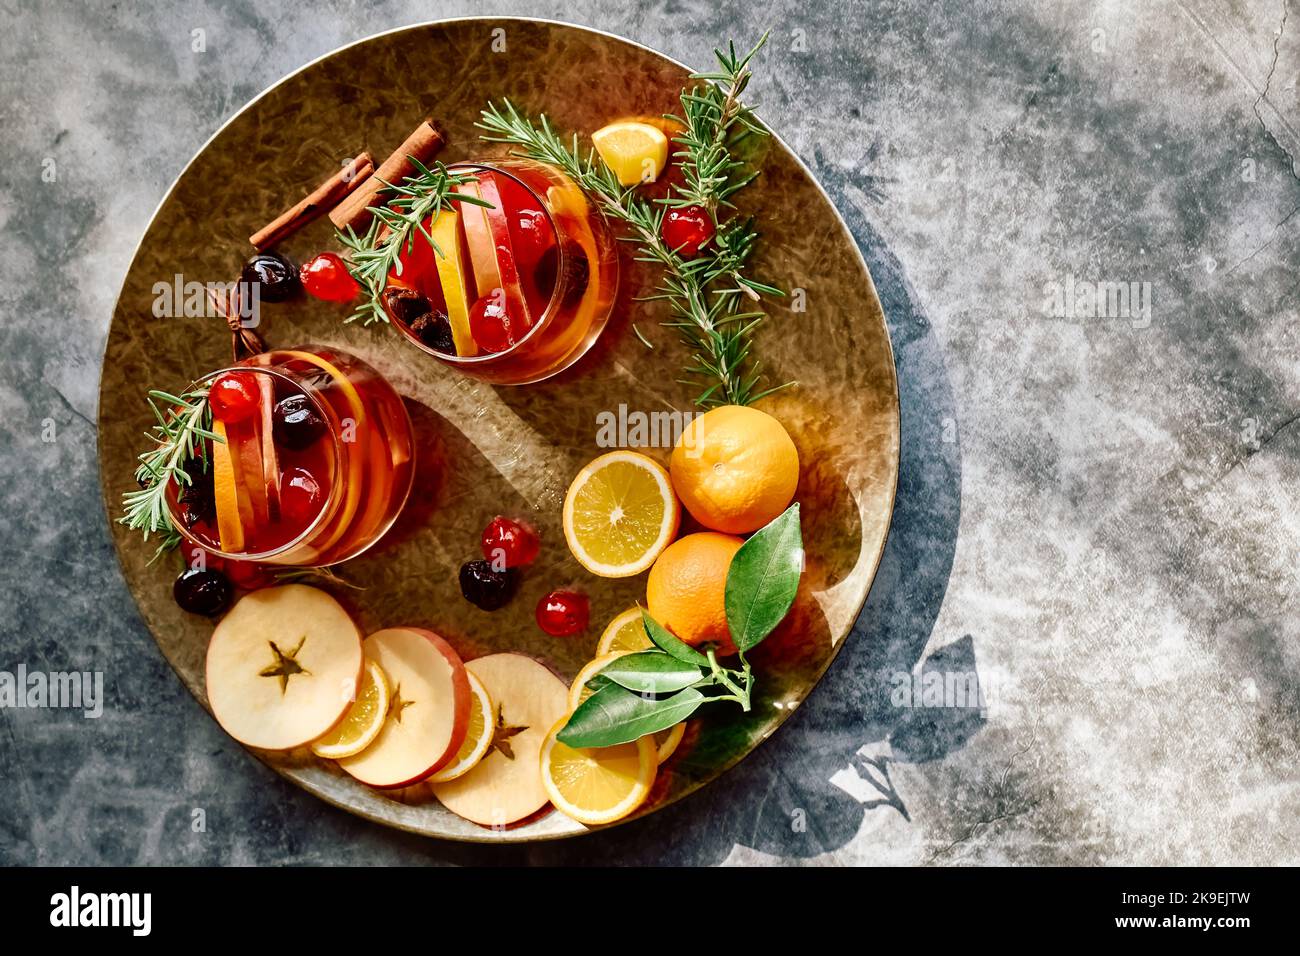 Vin chaud ou sangria de noël aux épices aromatiques, aux pommes, aux cerises et aux agrumes. Traditionnel Noël festive boisson chaude épicée à l'orange Banque D'Images